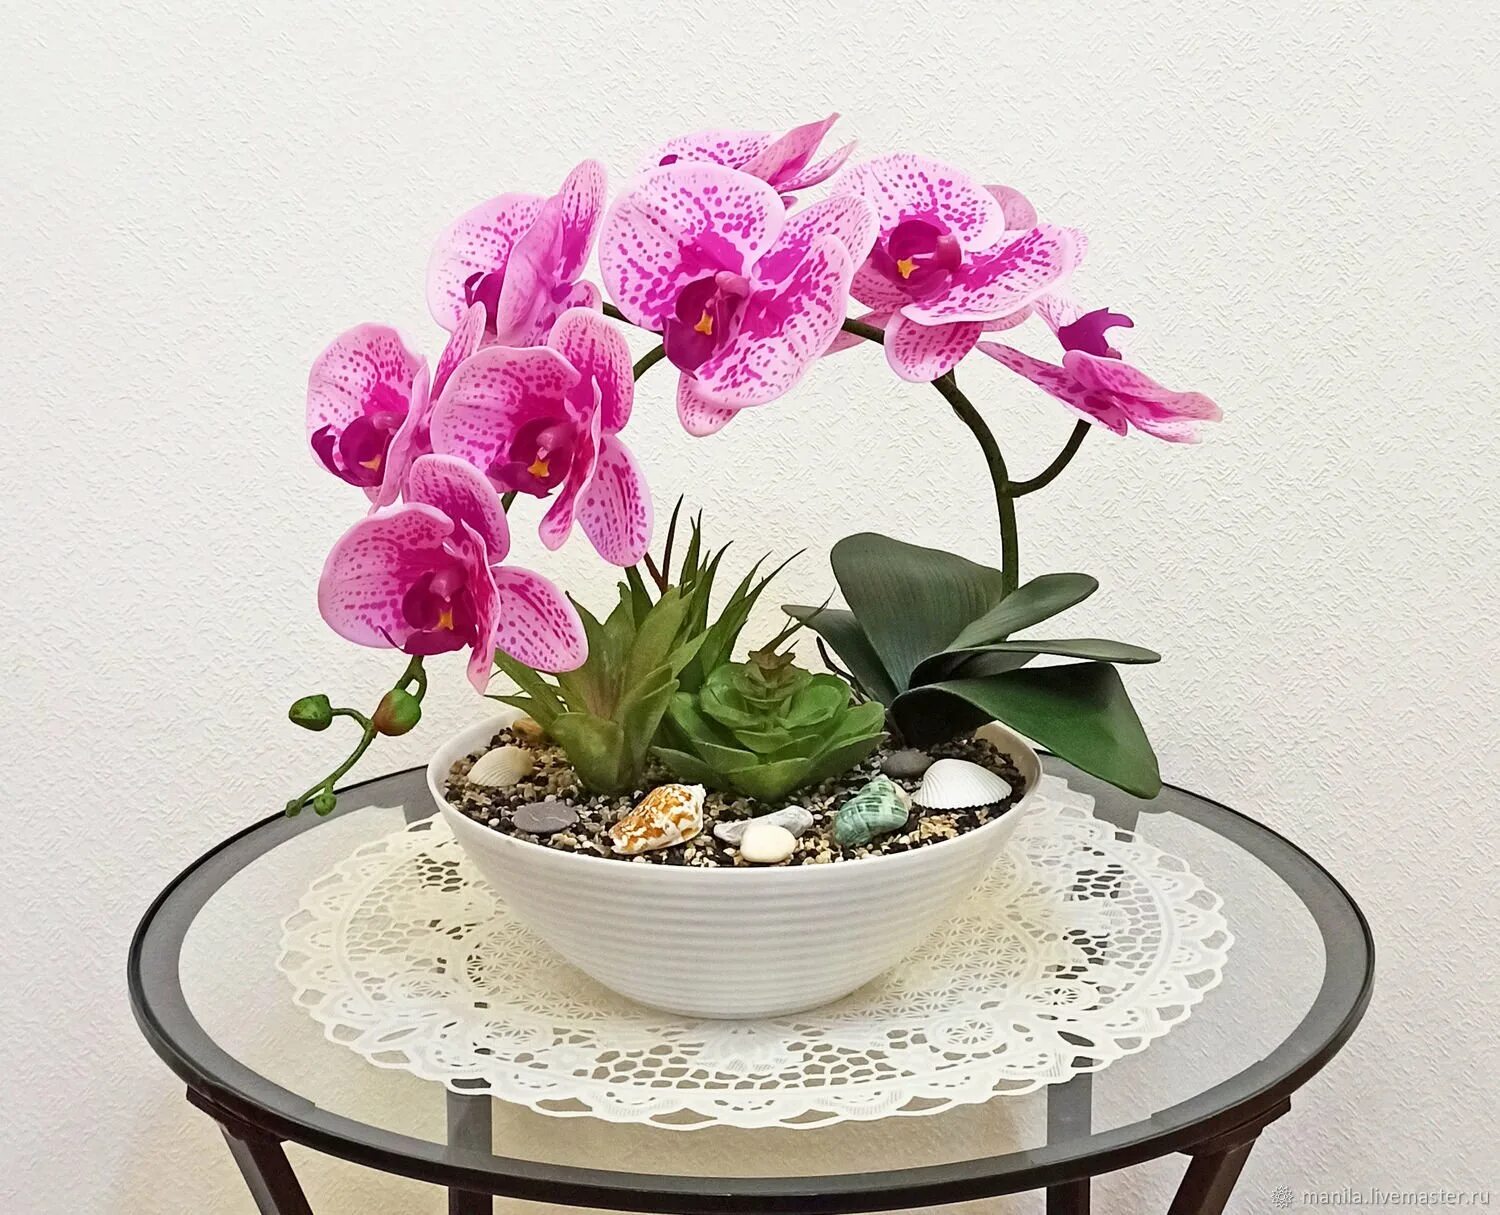 Орхидея живая цветок. Композиции с орхидеей фаленопсис. Орхидея Шанелла. Фаленопсис Алабастер. Орхидея Arezzo.